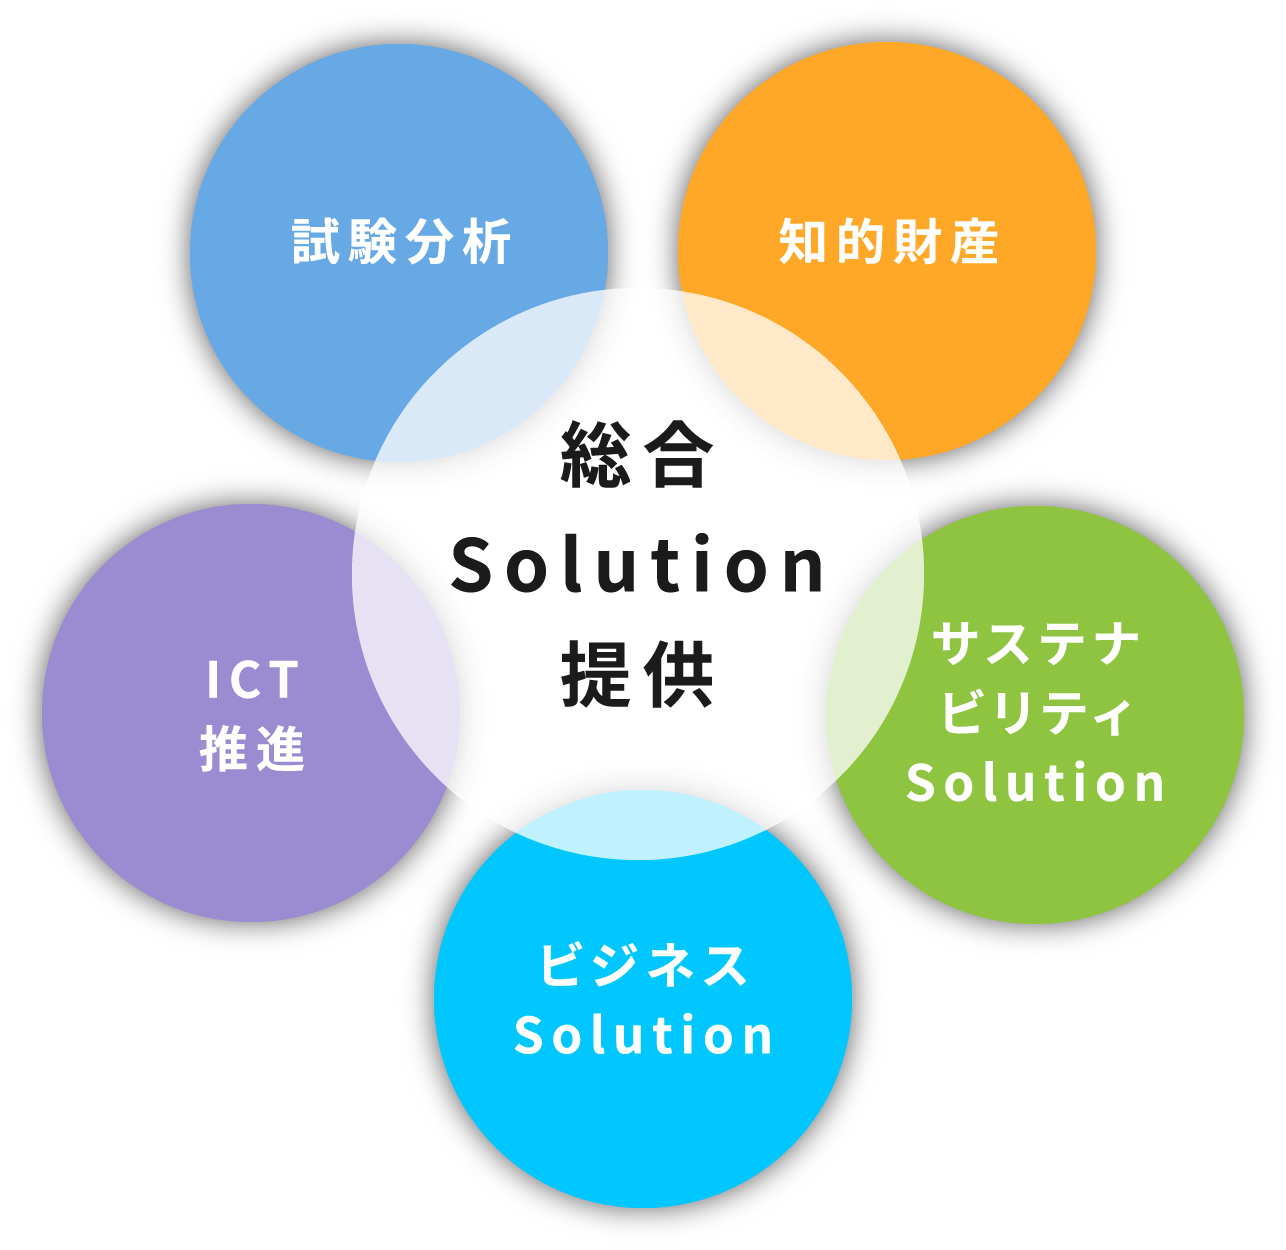 総合Solution提供(知的財産/サステナビリティSolution/ビジネスSolution/ICT推進/試験分析)
              